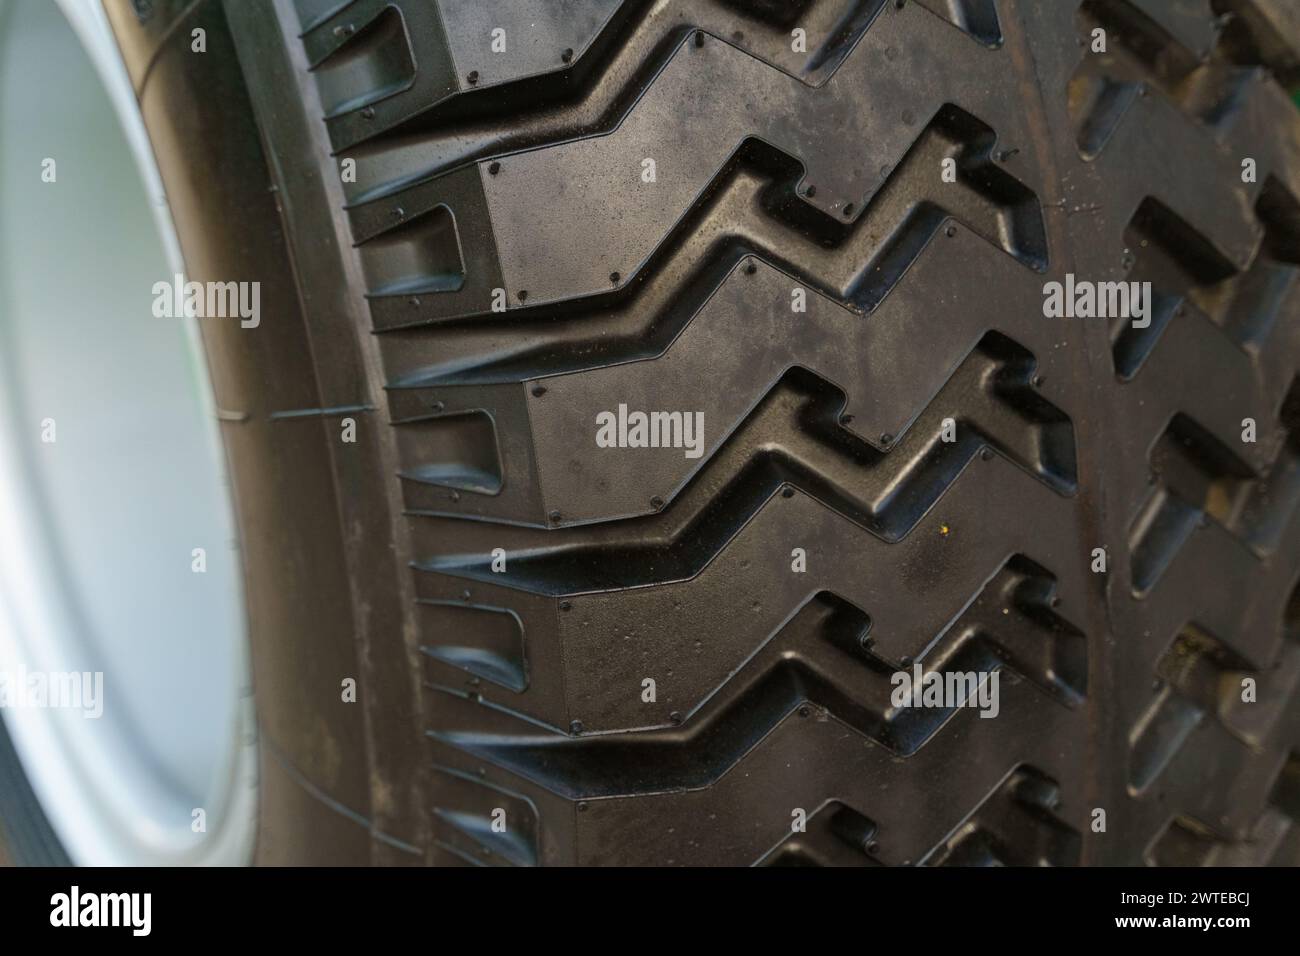 Detailansicht eines an einem Fahrzeug montierten Reifens mit Profil und Seitenwand. Der Reifen ist schmutzig, was darauf hinweist, dass er kürzlich verwendet wurde. Stockfoto